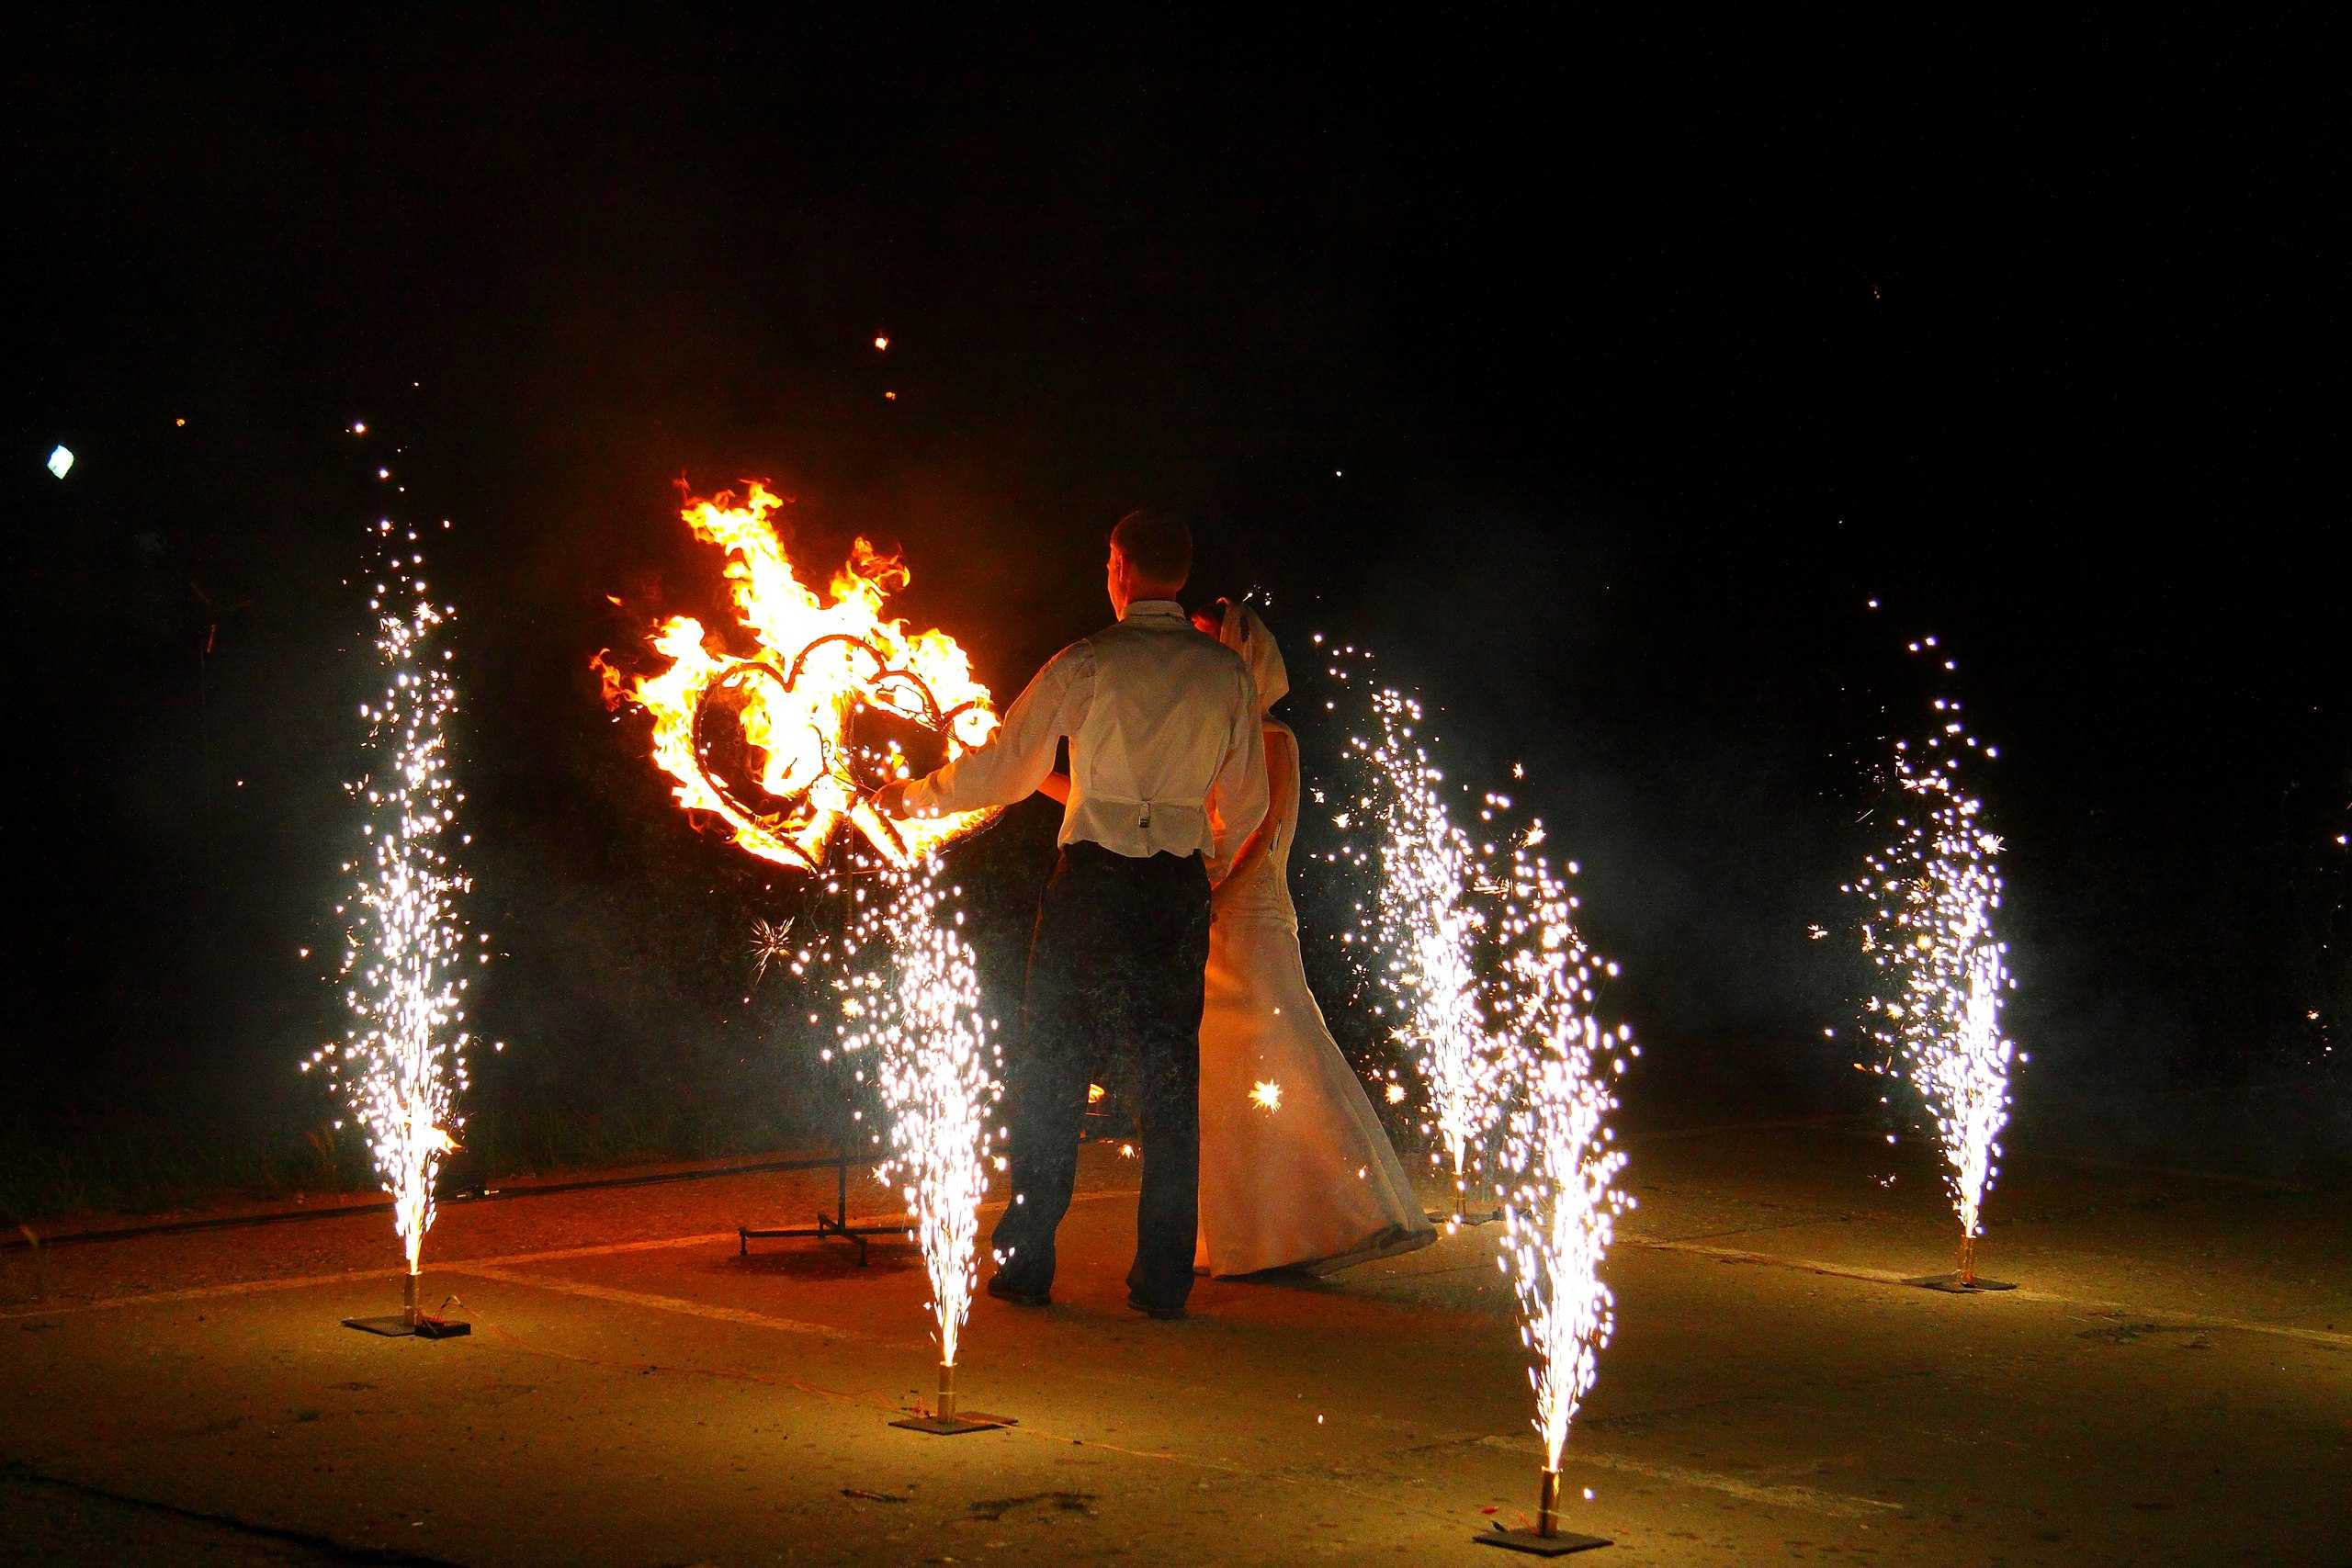 Фаер-шоу на свадьбе, или Укрощение строптивого огня